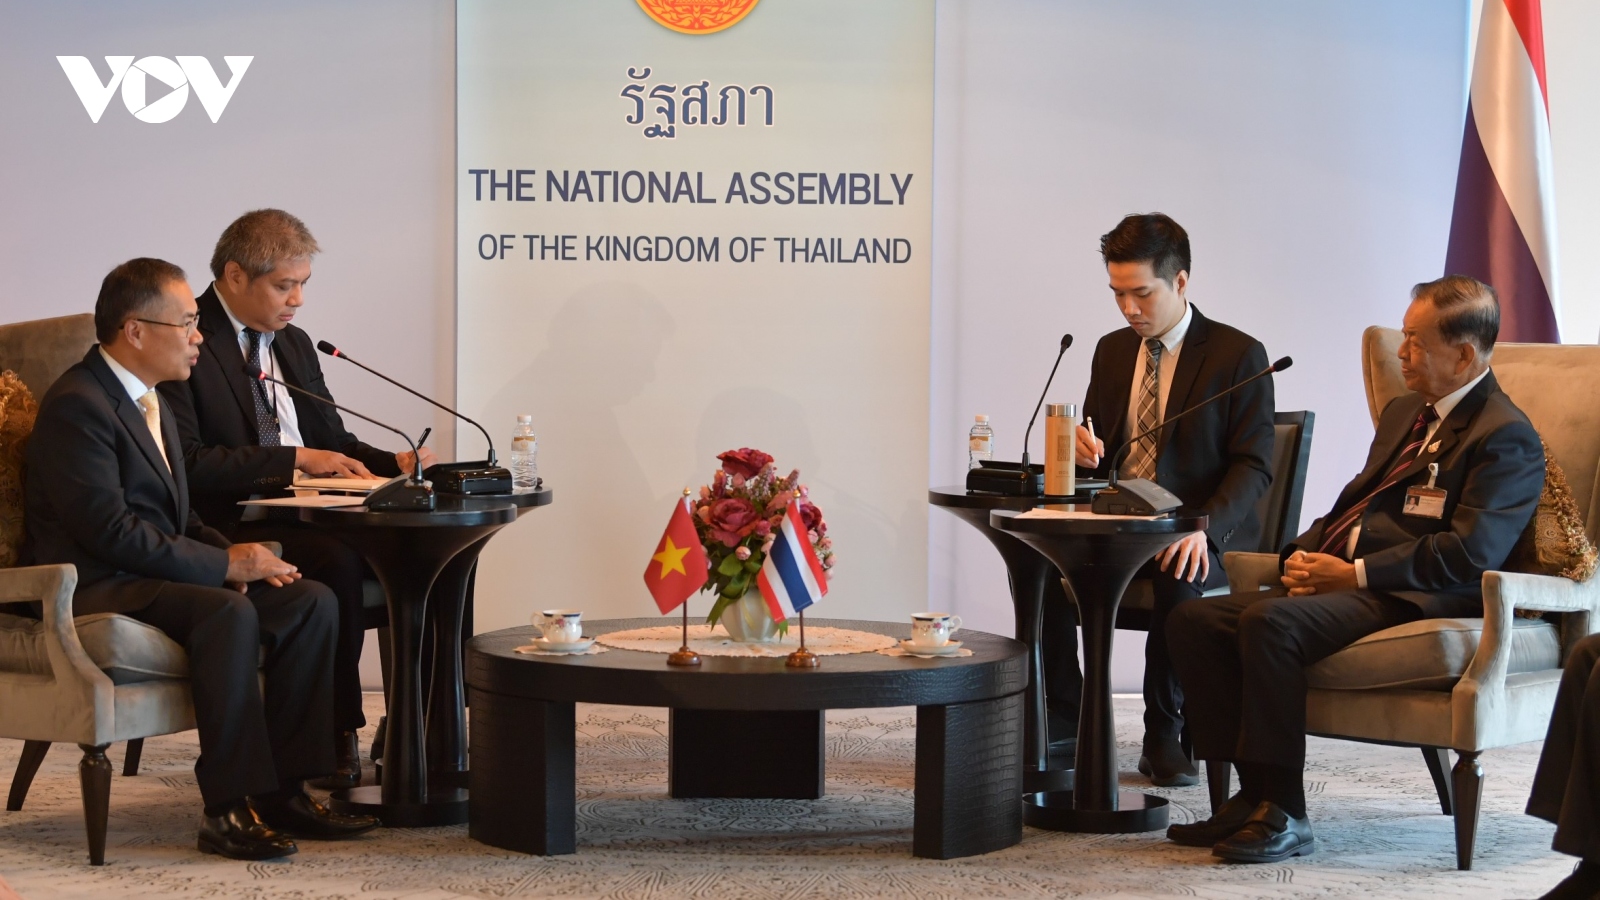 Hợp tác nghị viện giữa Việt Nam và Thái Lan còn nhiều dư địa